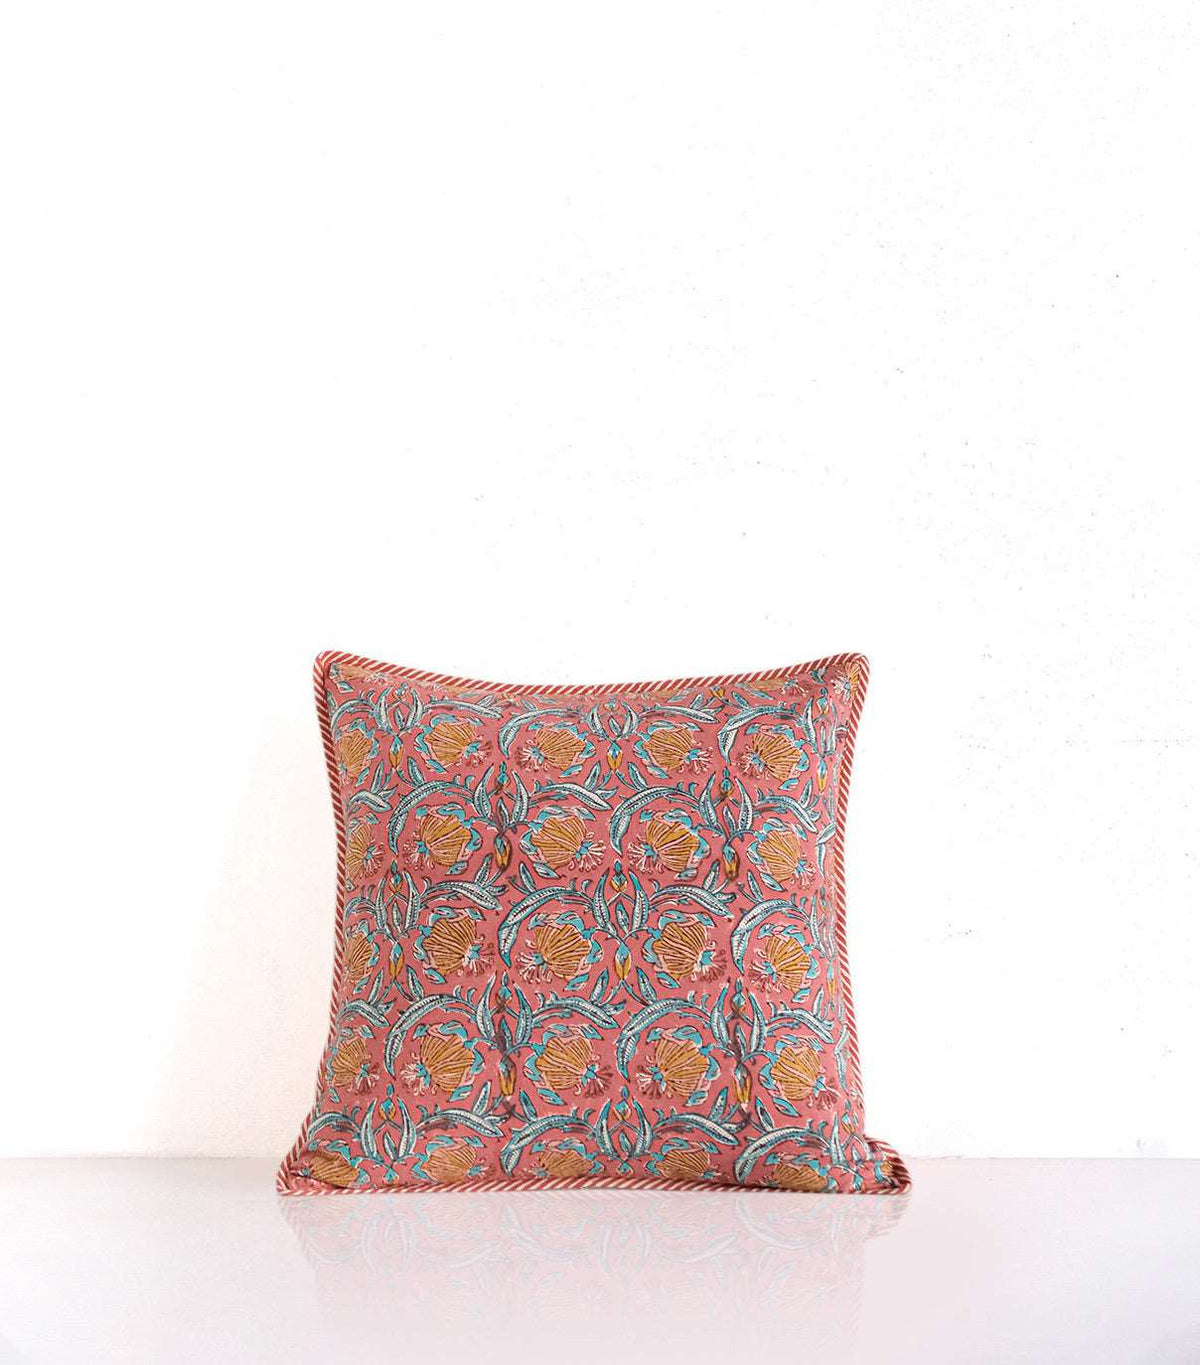 Jaipur rose block printed cushion cover